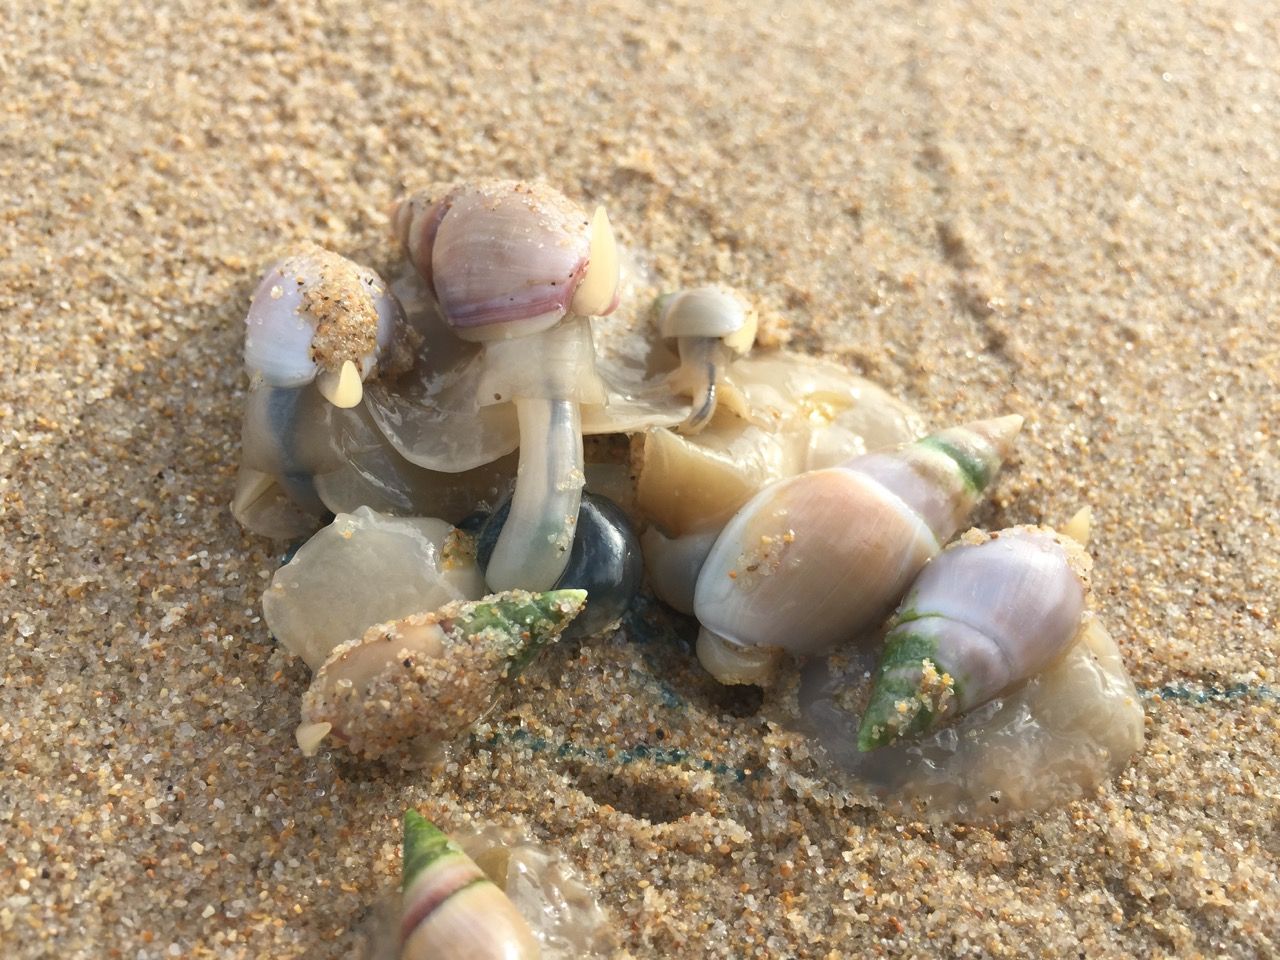 Slugs feeding on a deceased jellyfish.